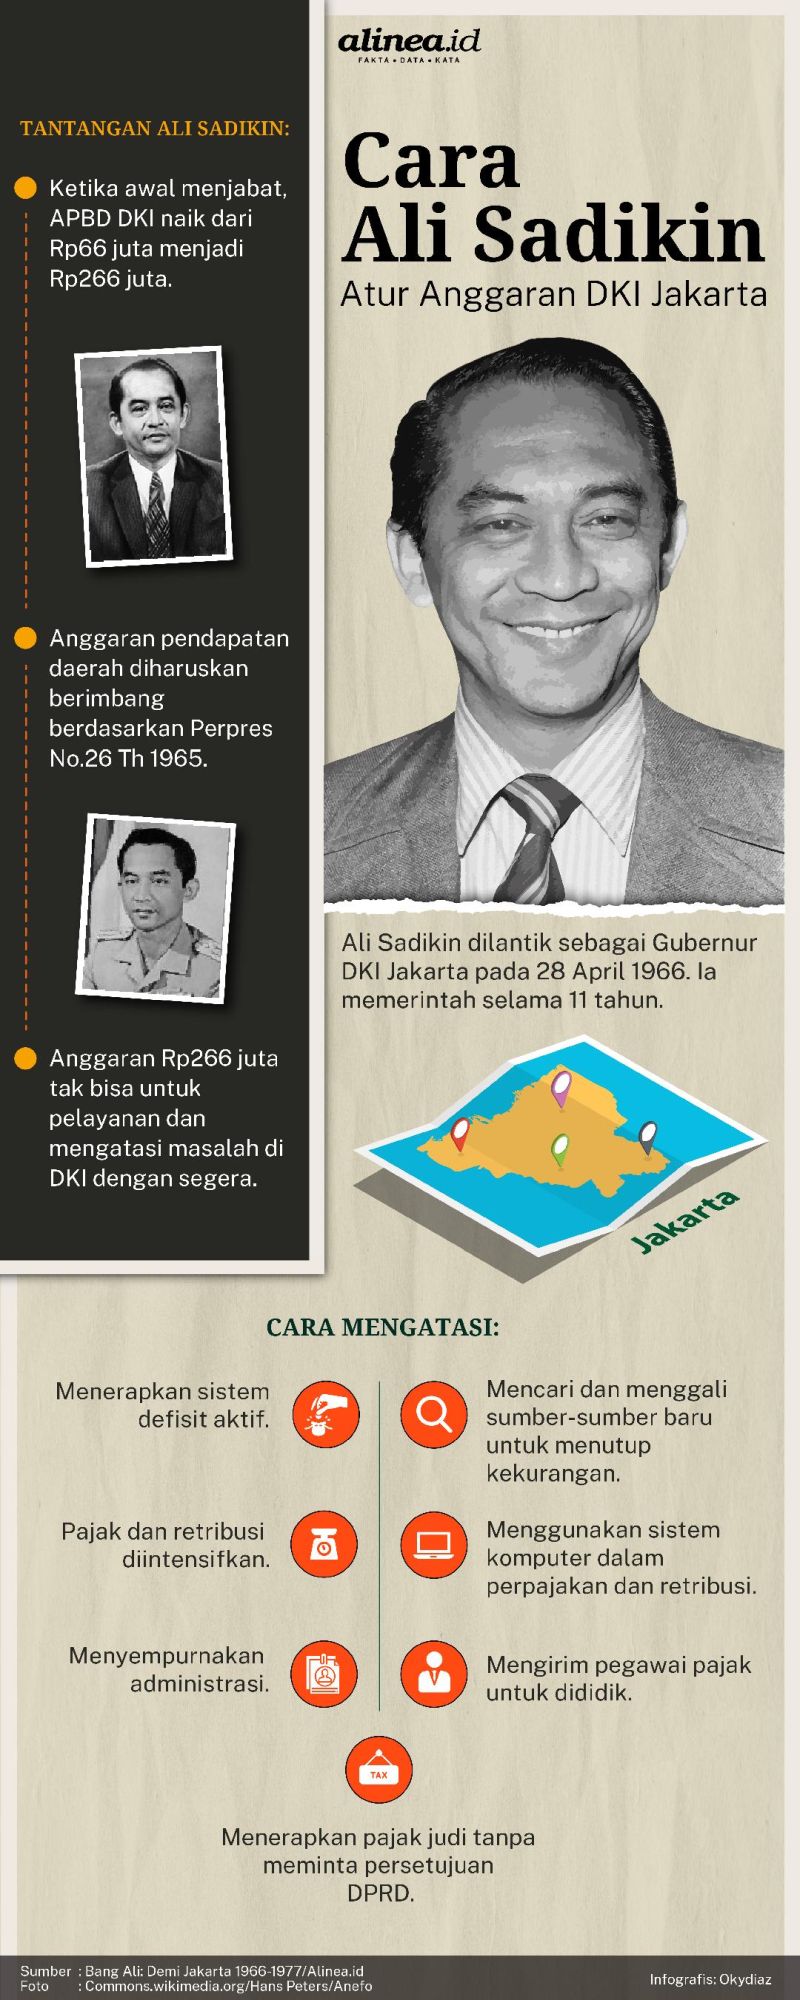 Ali Sadikin memulai menjadi Gubernur DKI Jakarta dengan anggaran yang minim. Alinea.id/Oky Diaz.